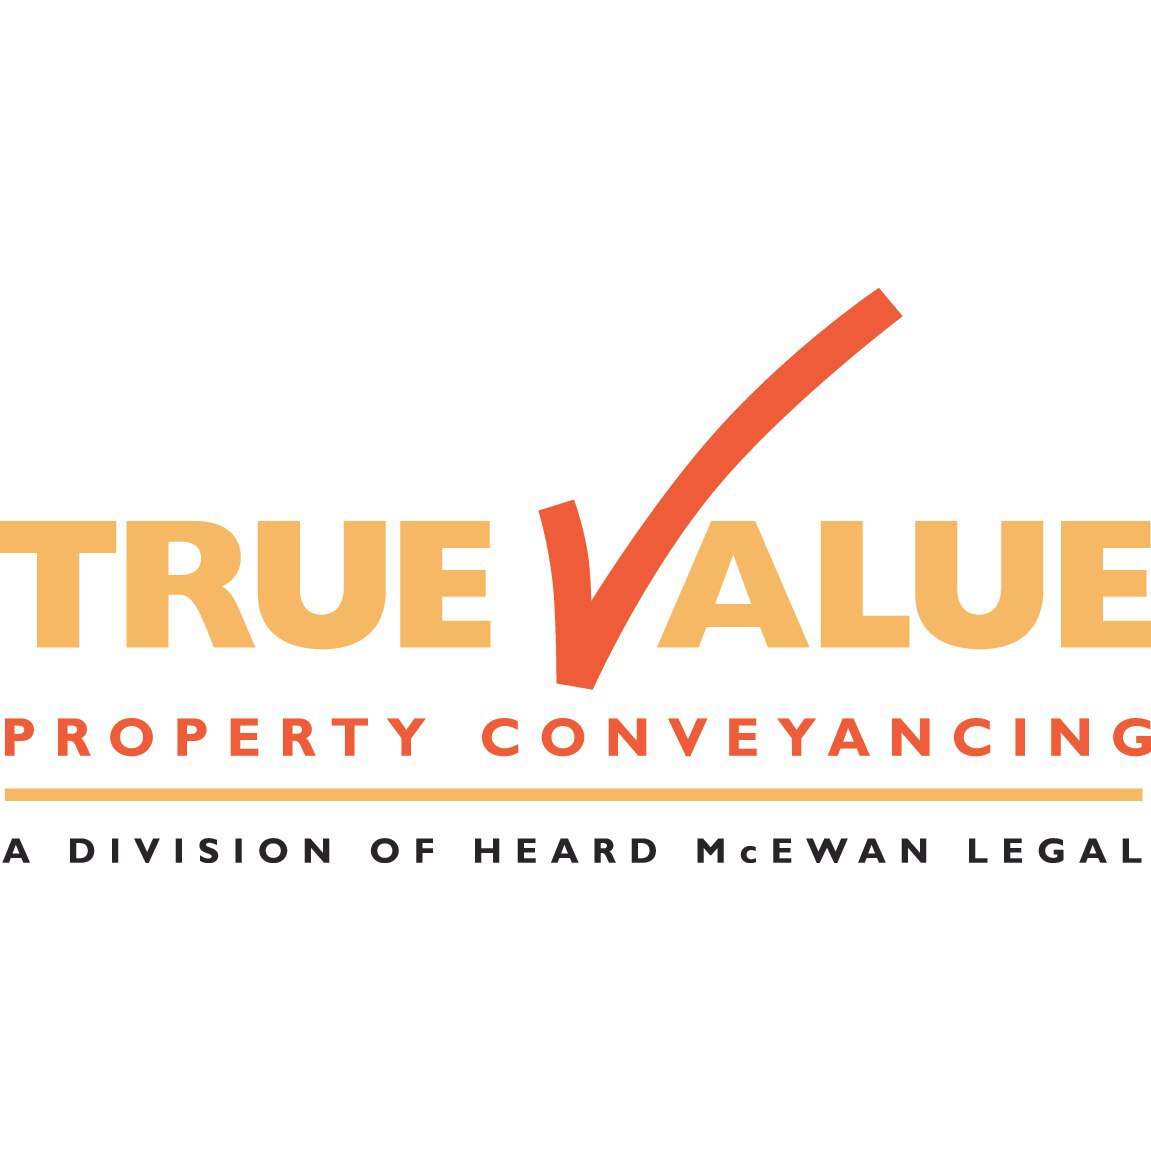 True Value Property Conveyancing - Dapto, NSW 2530 - (02) 4254 5200 | ShowMeLocal.com